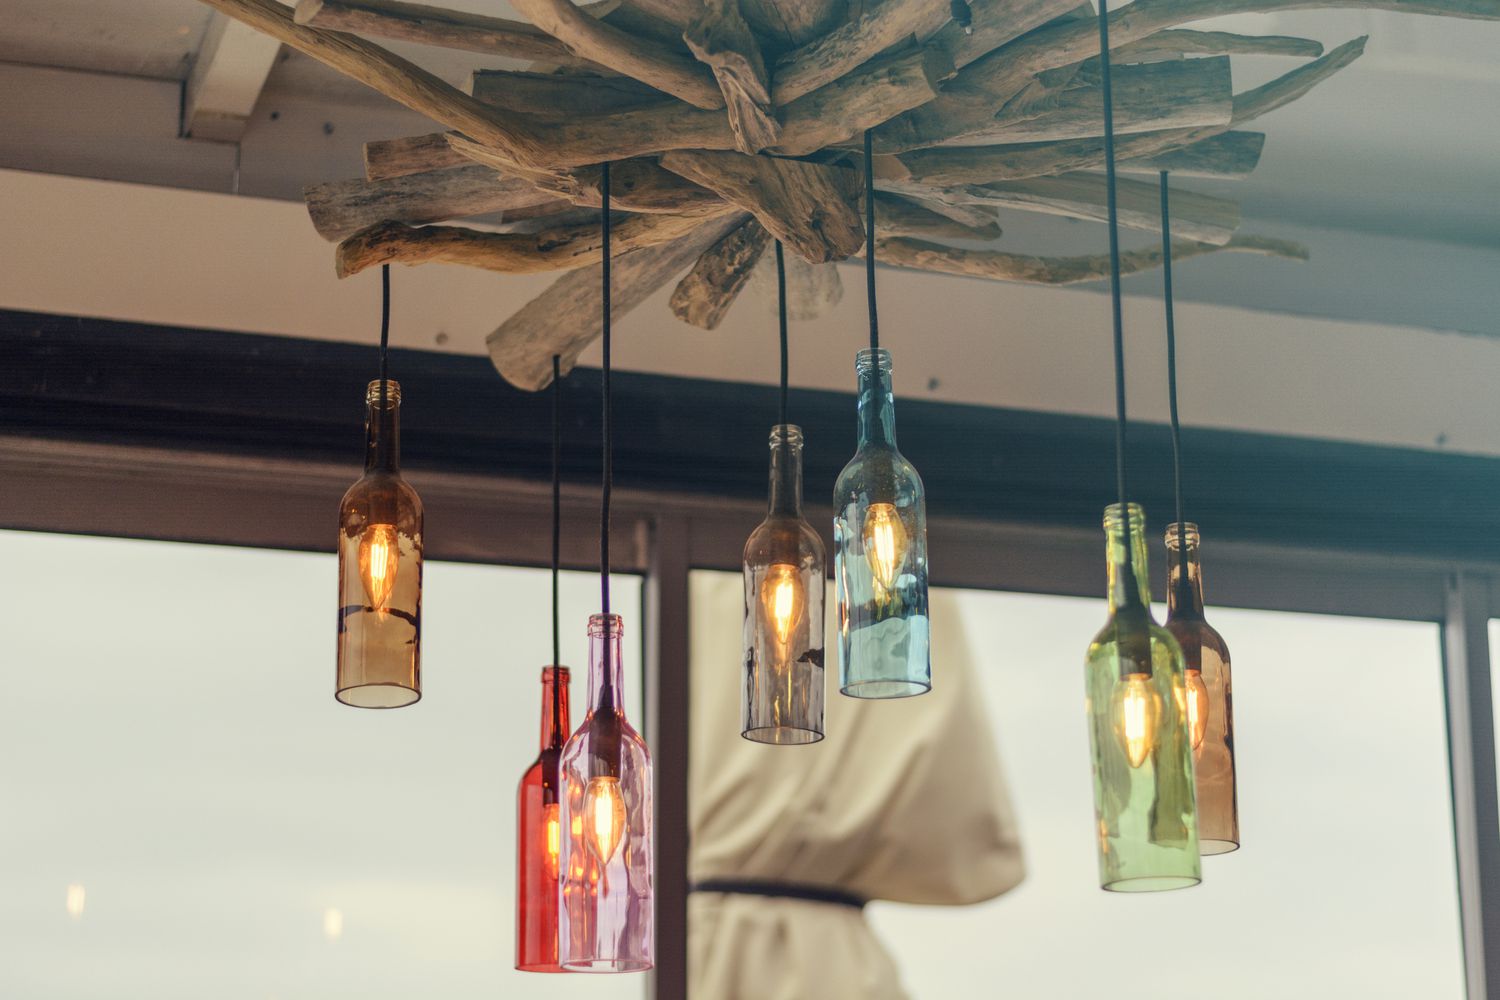 botellas de colores con bombillas dentro convertidas en lámparas colgantes que cuelgan de madera a la deriva en el techo